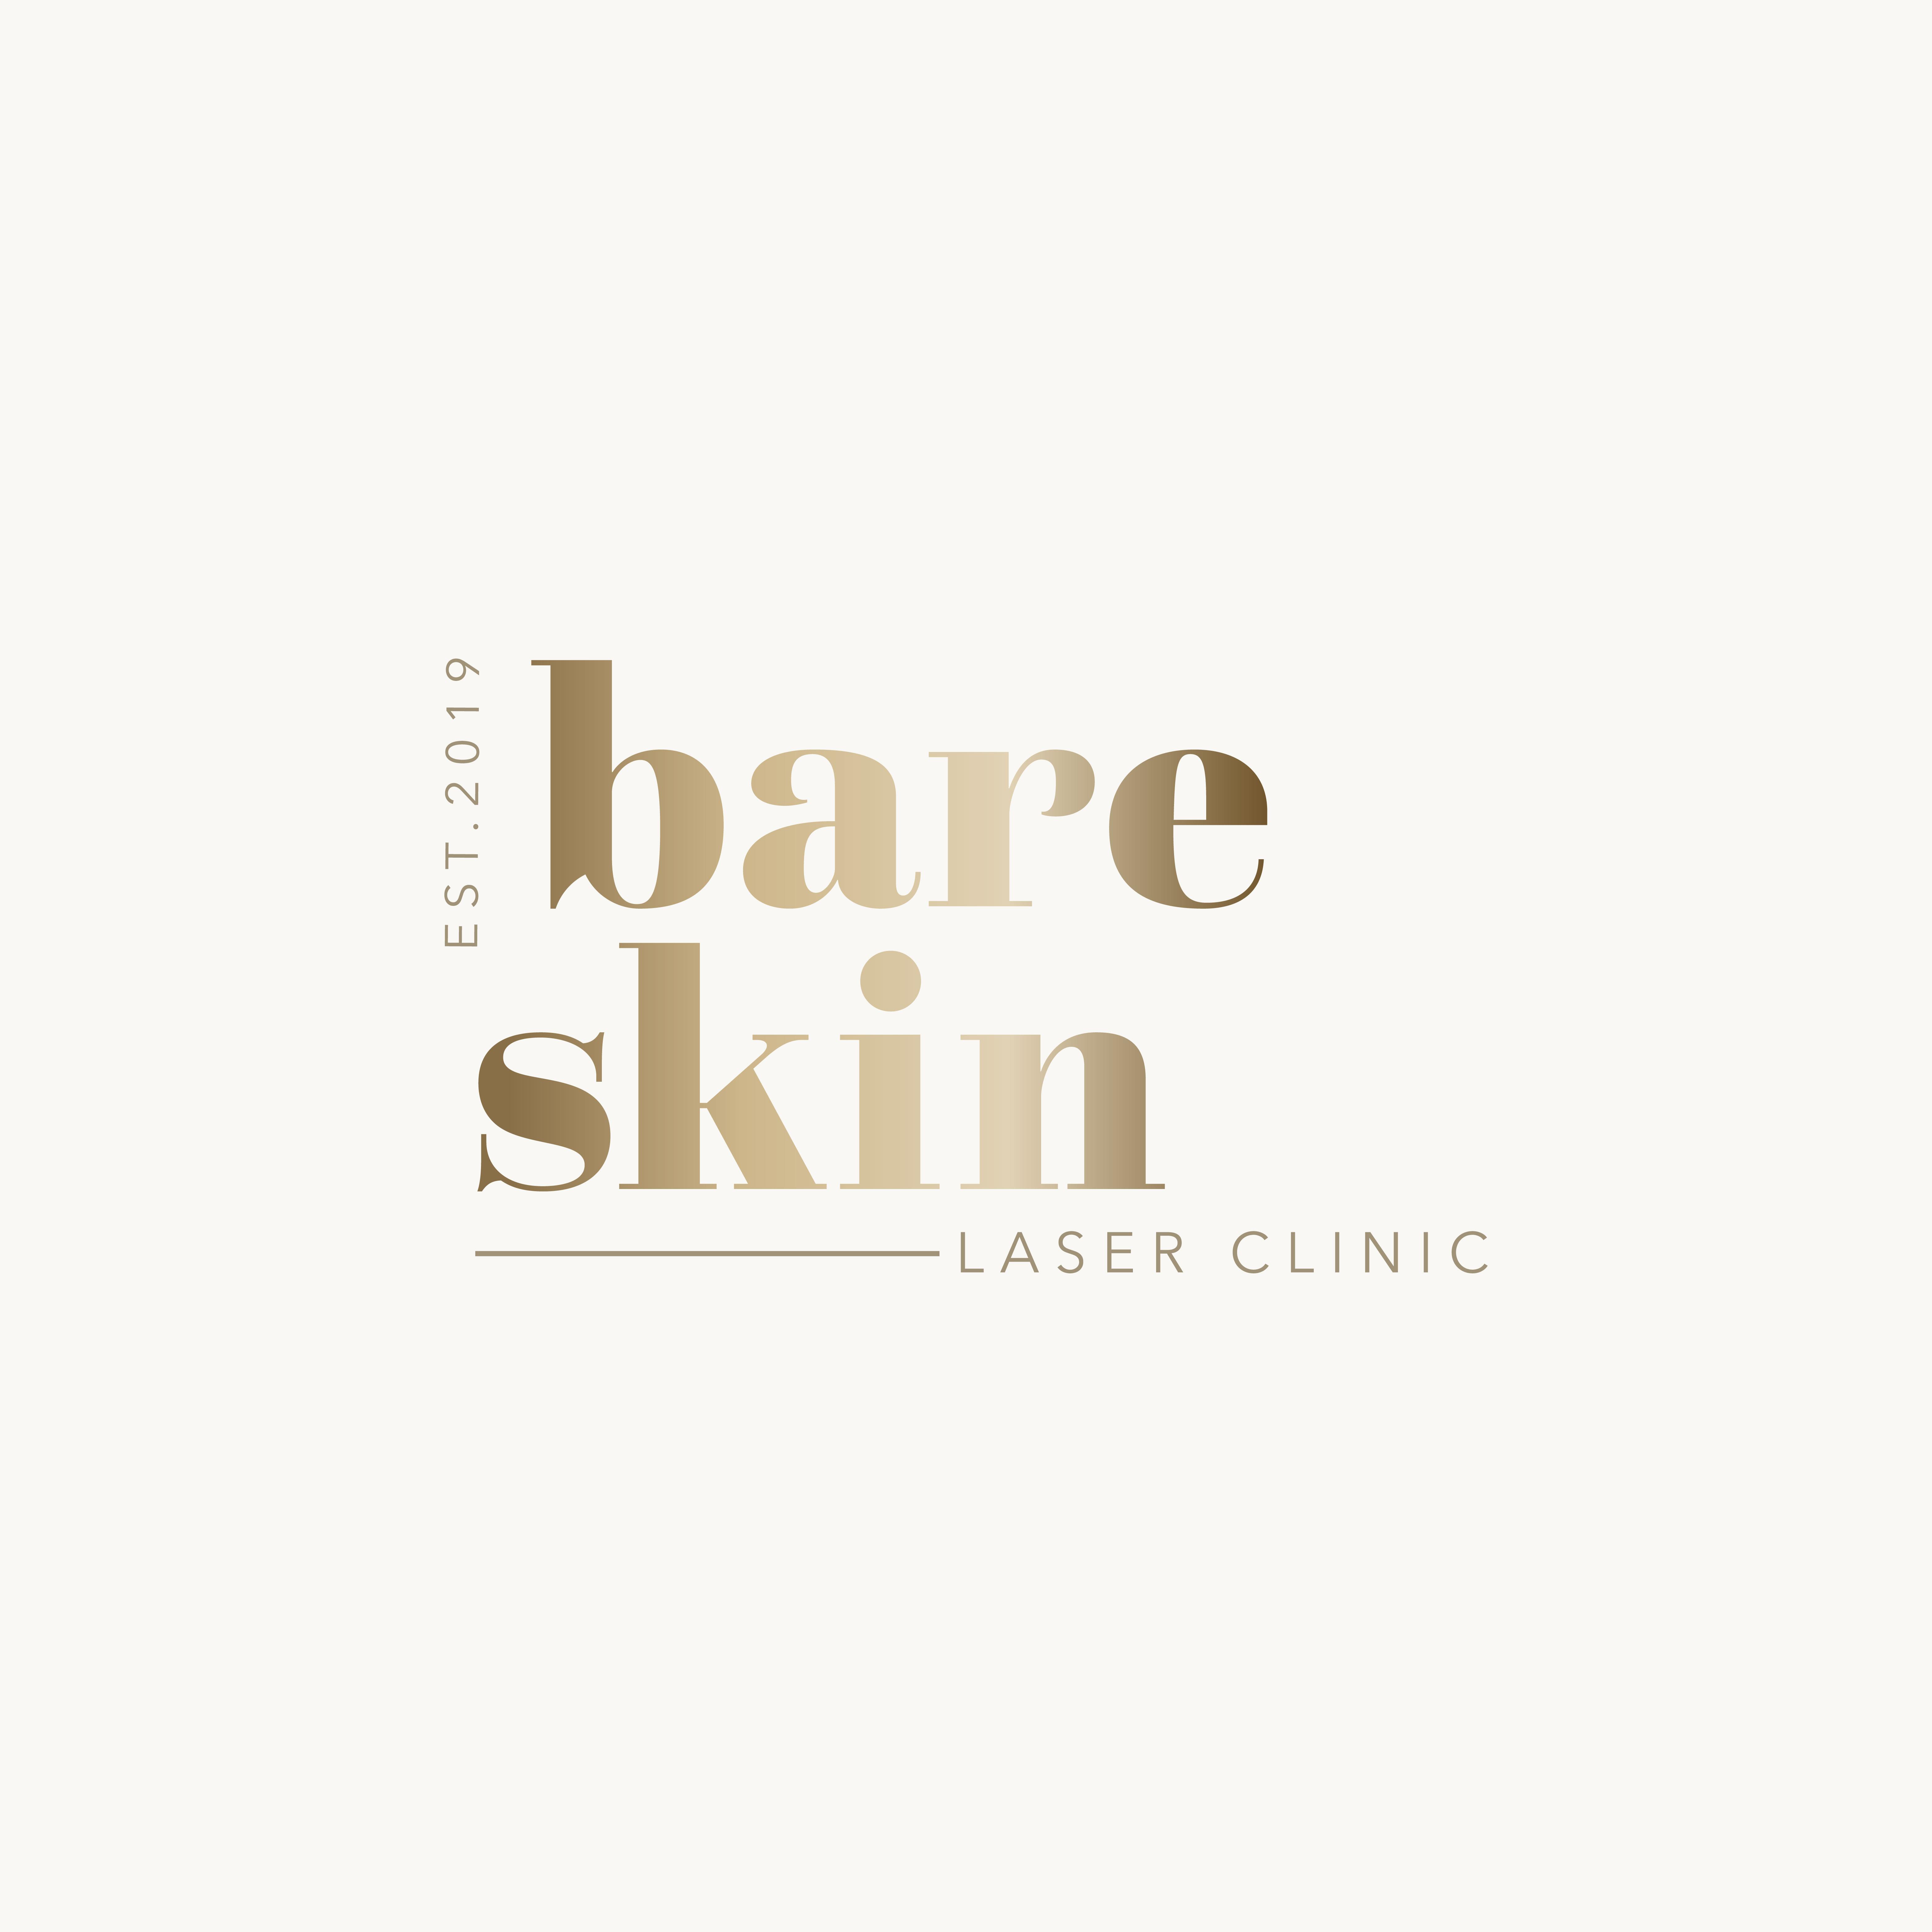 Bare skin laser clinic